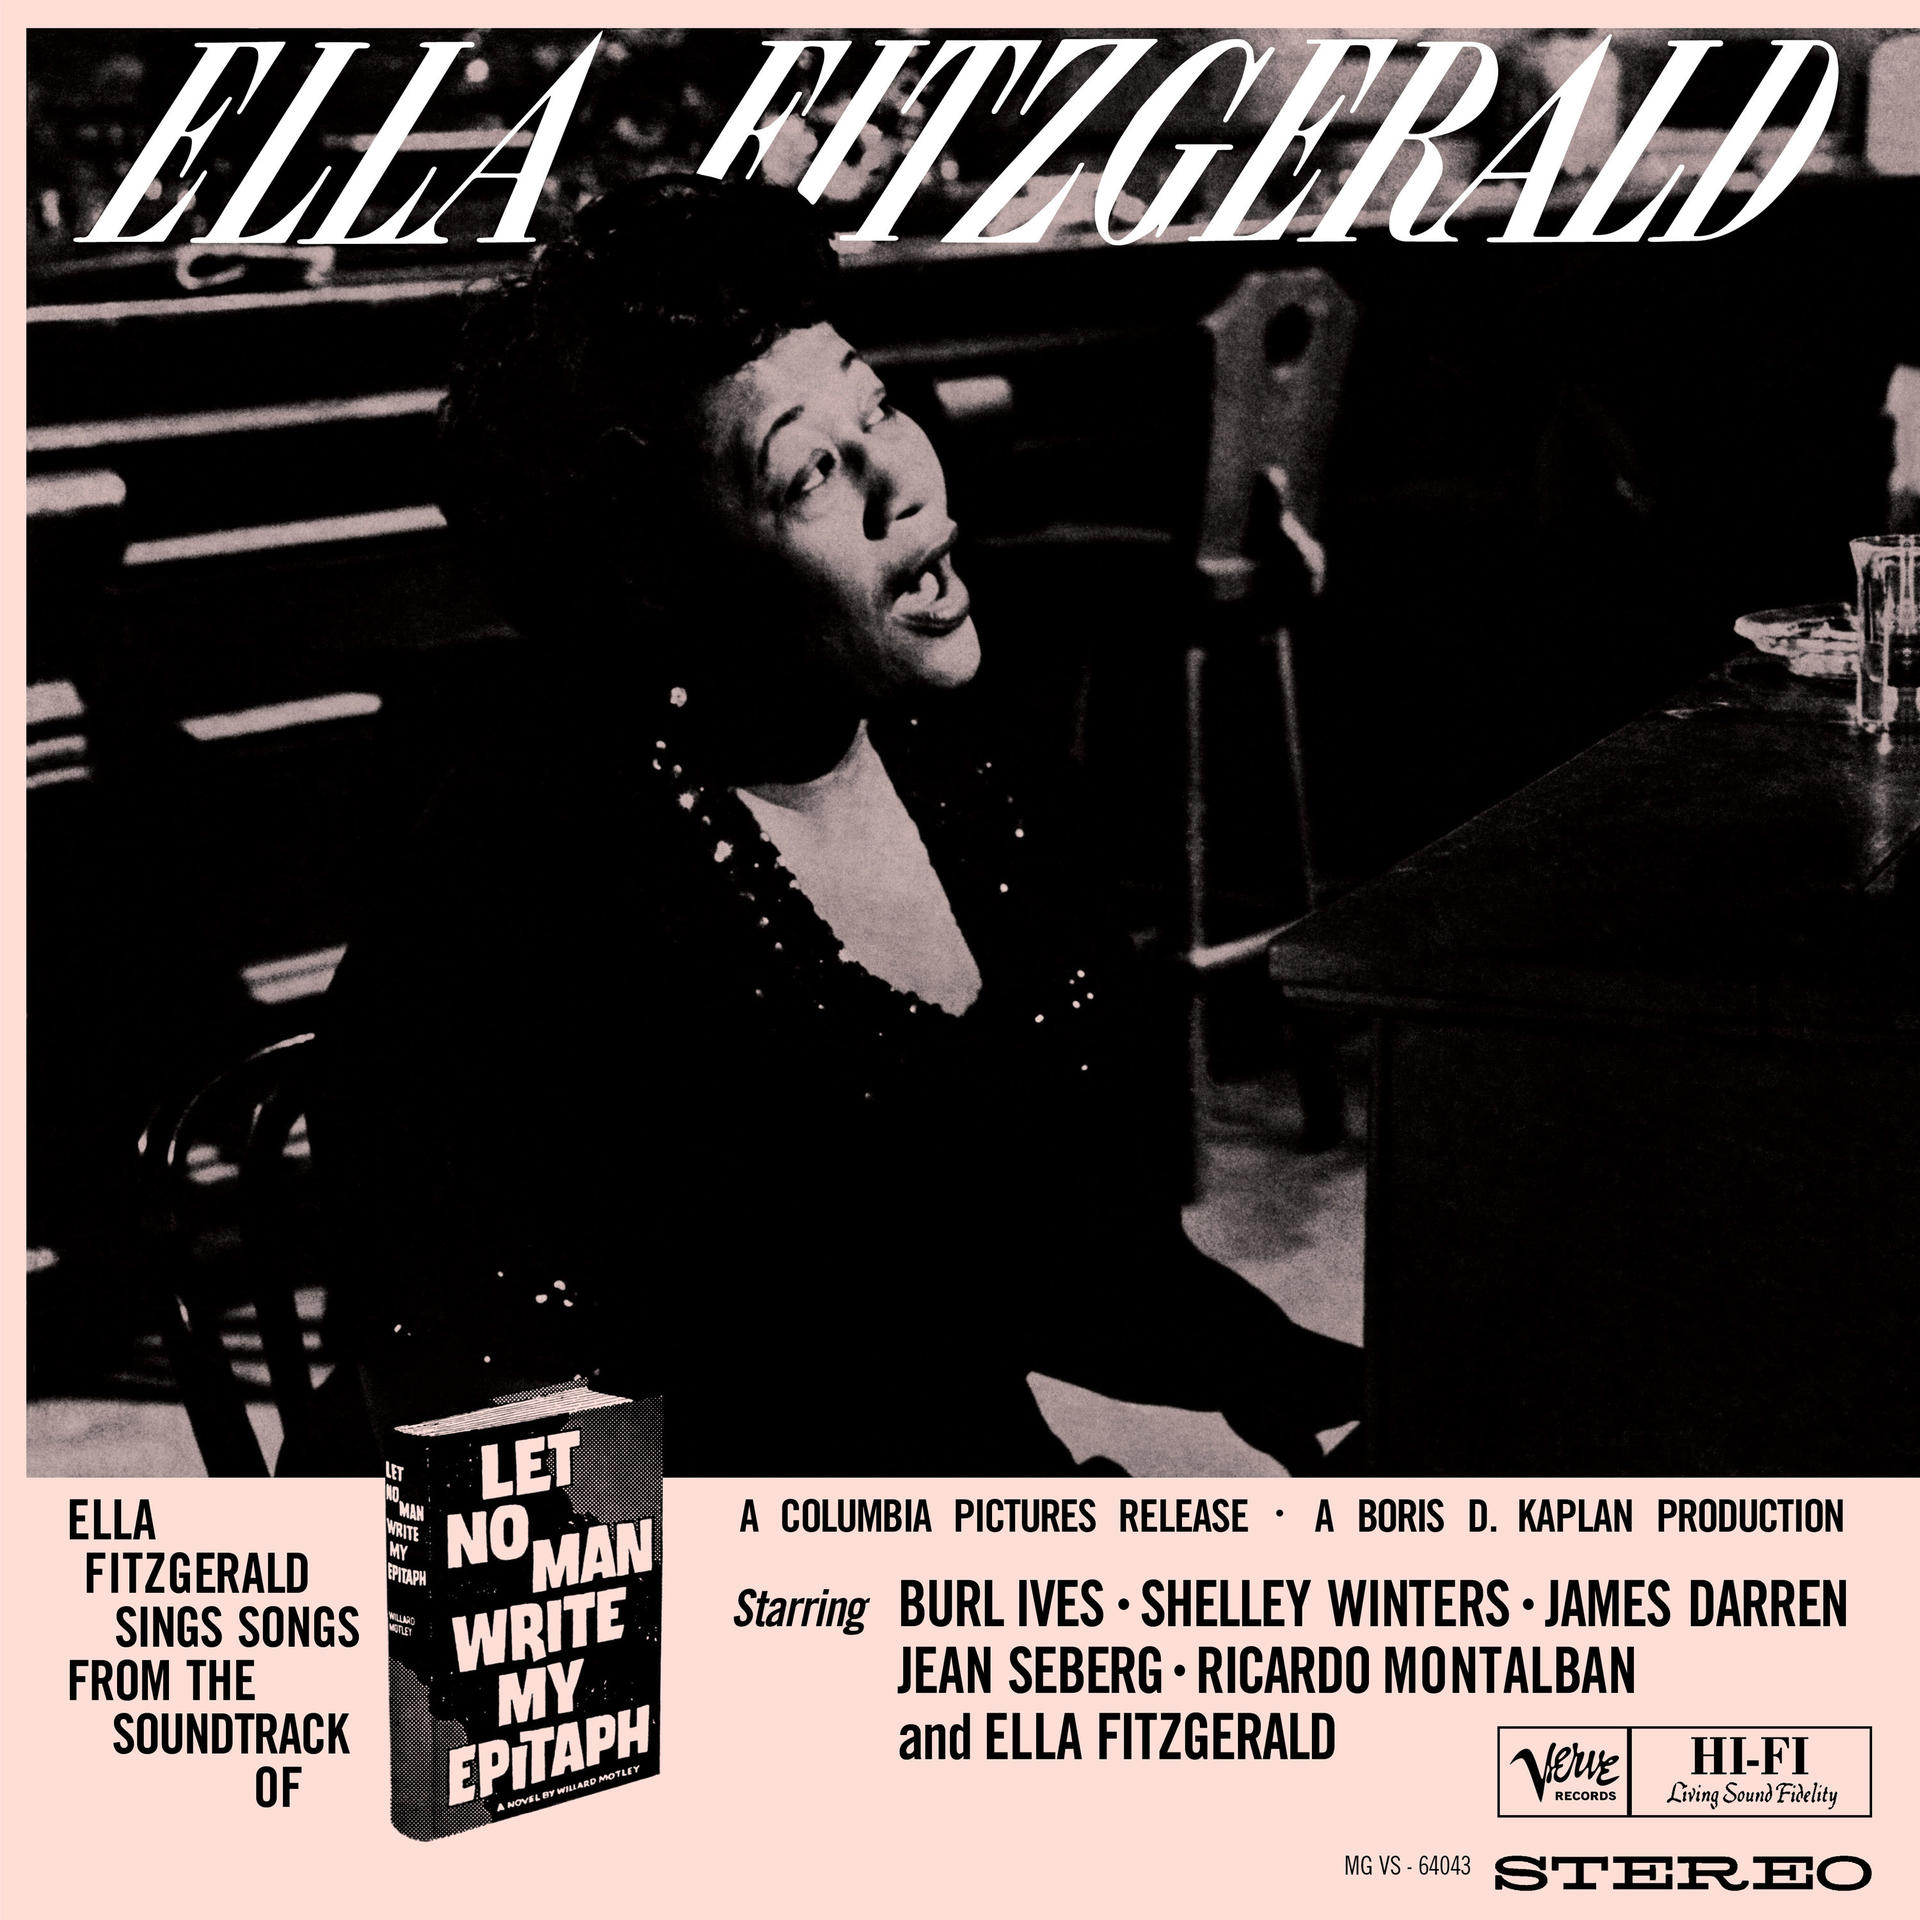 Ella Fitzgerald - Let no Sounds) (Acoustic - My Write Epitaph man (Vinyl)